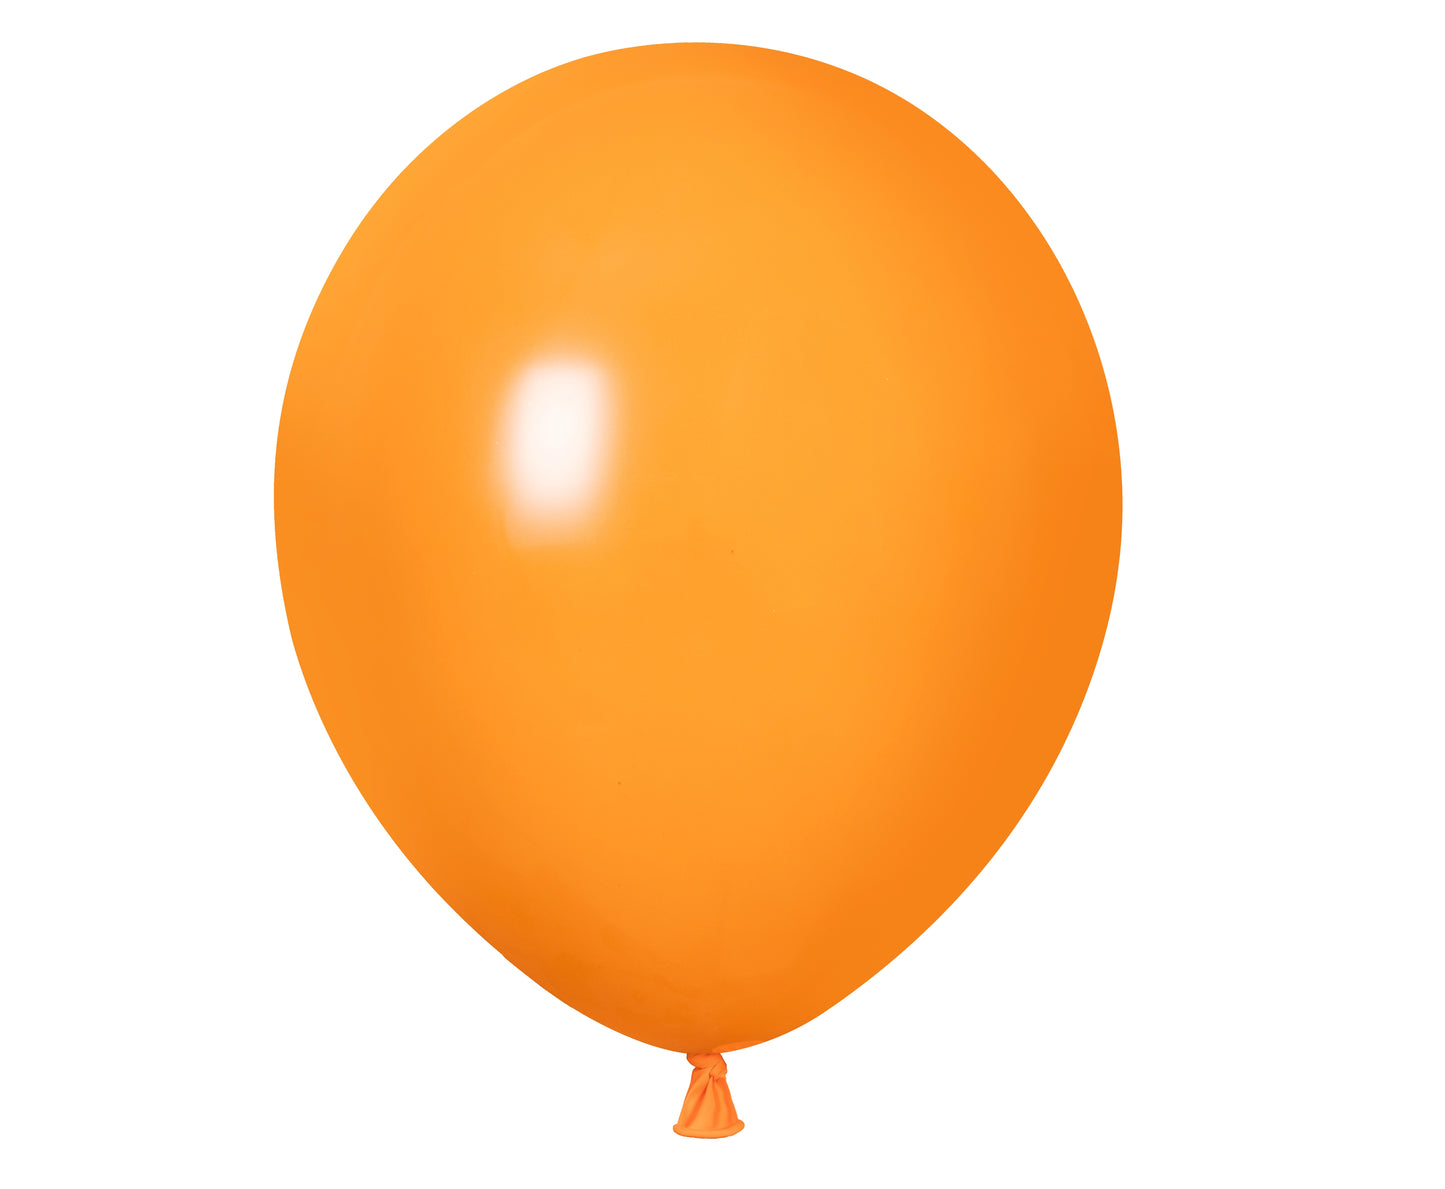 Winntex Premium 18" Orange Latex Balloon 25ct